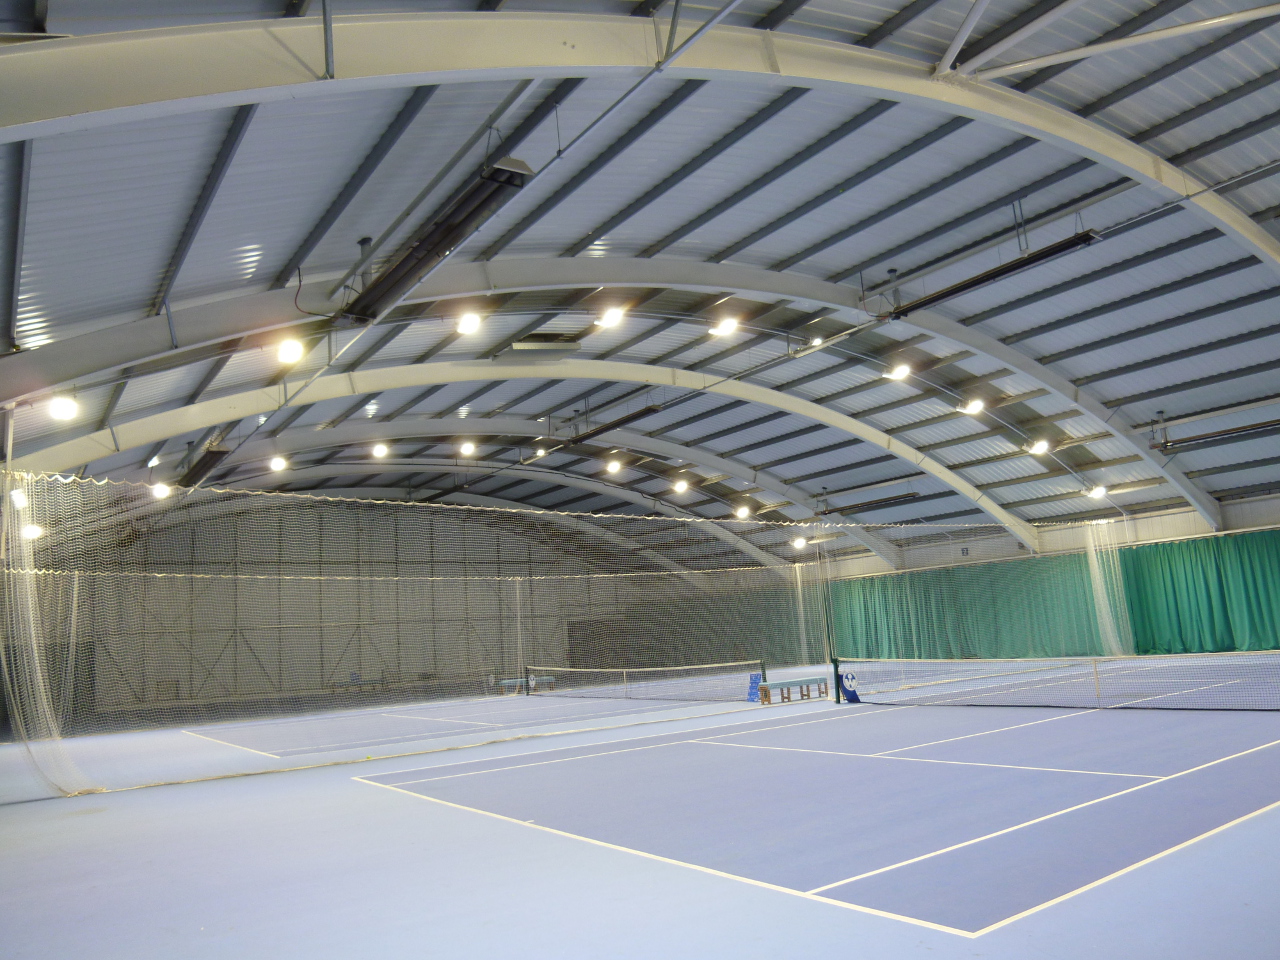 Wolverhampton Tennis and Squash Club